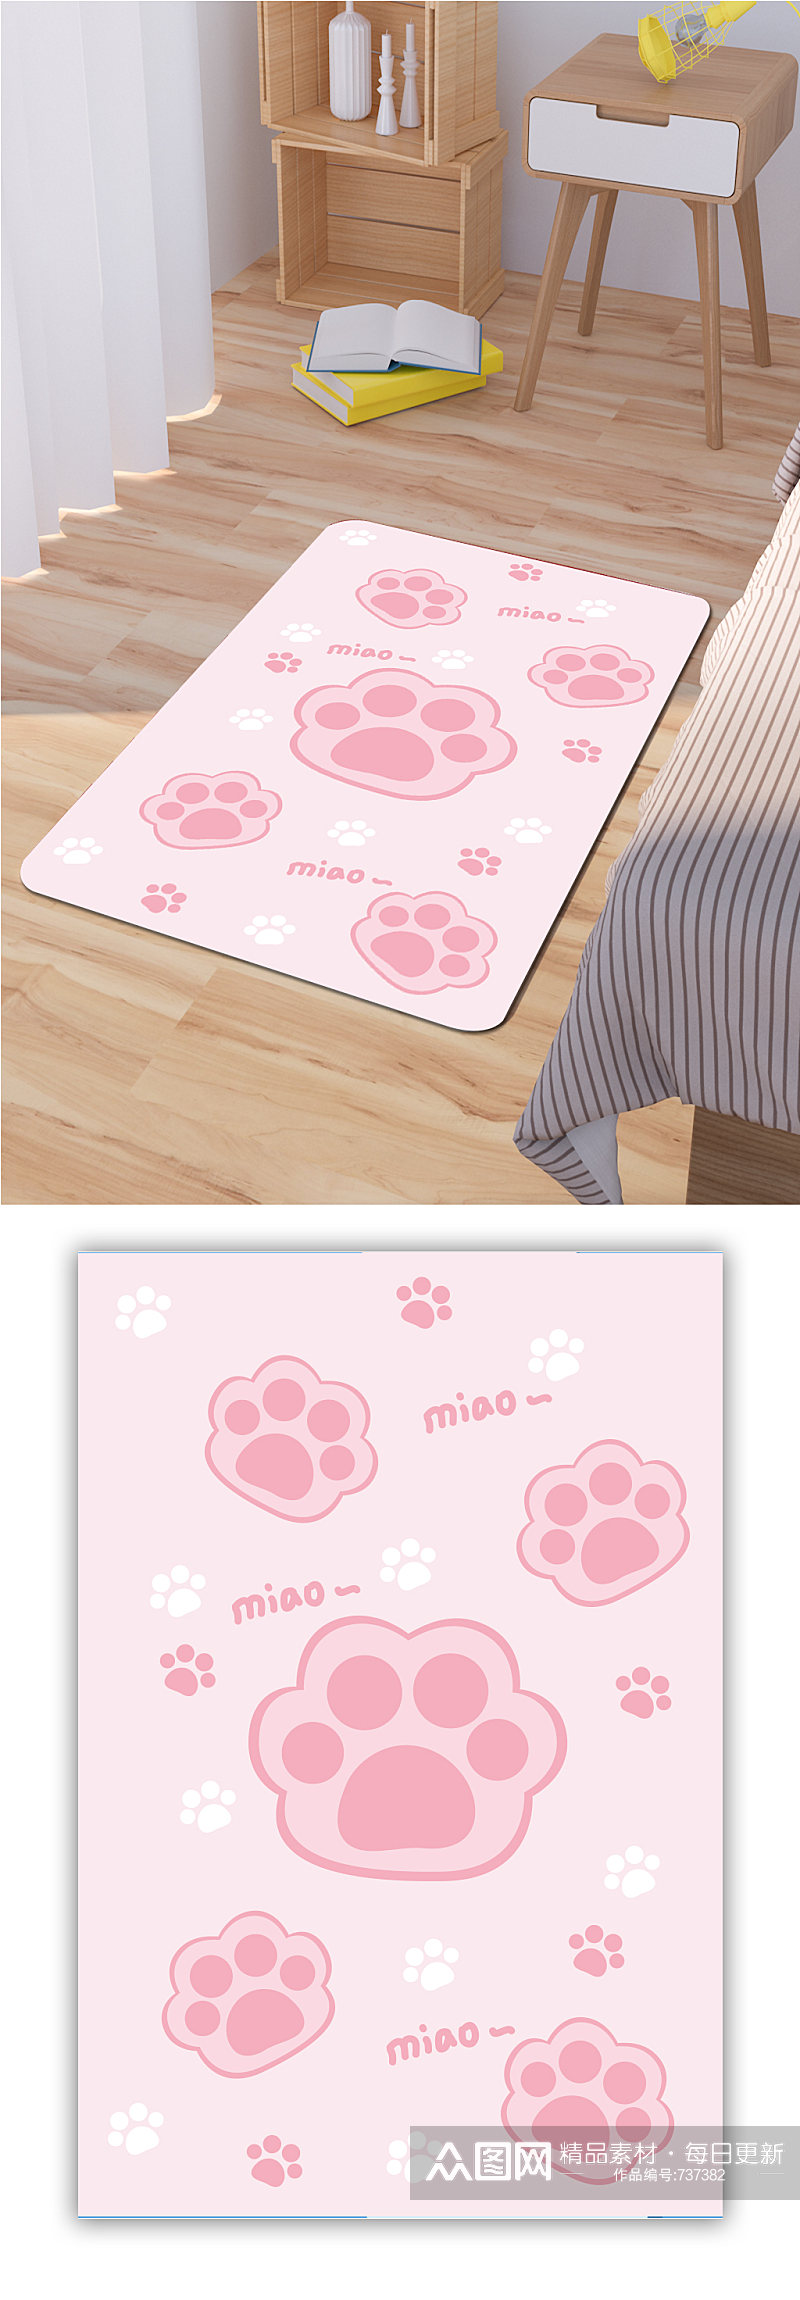 沙发地毯粉色脚印图案素材